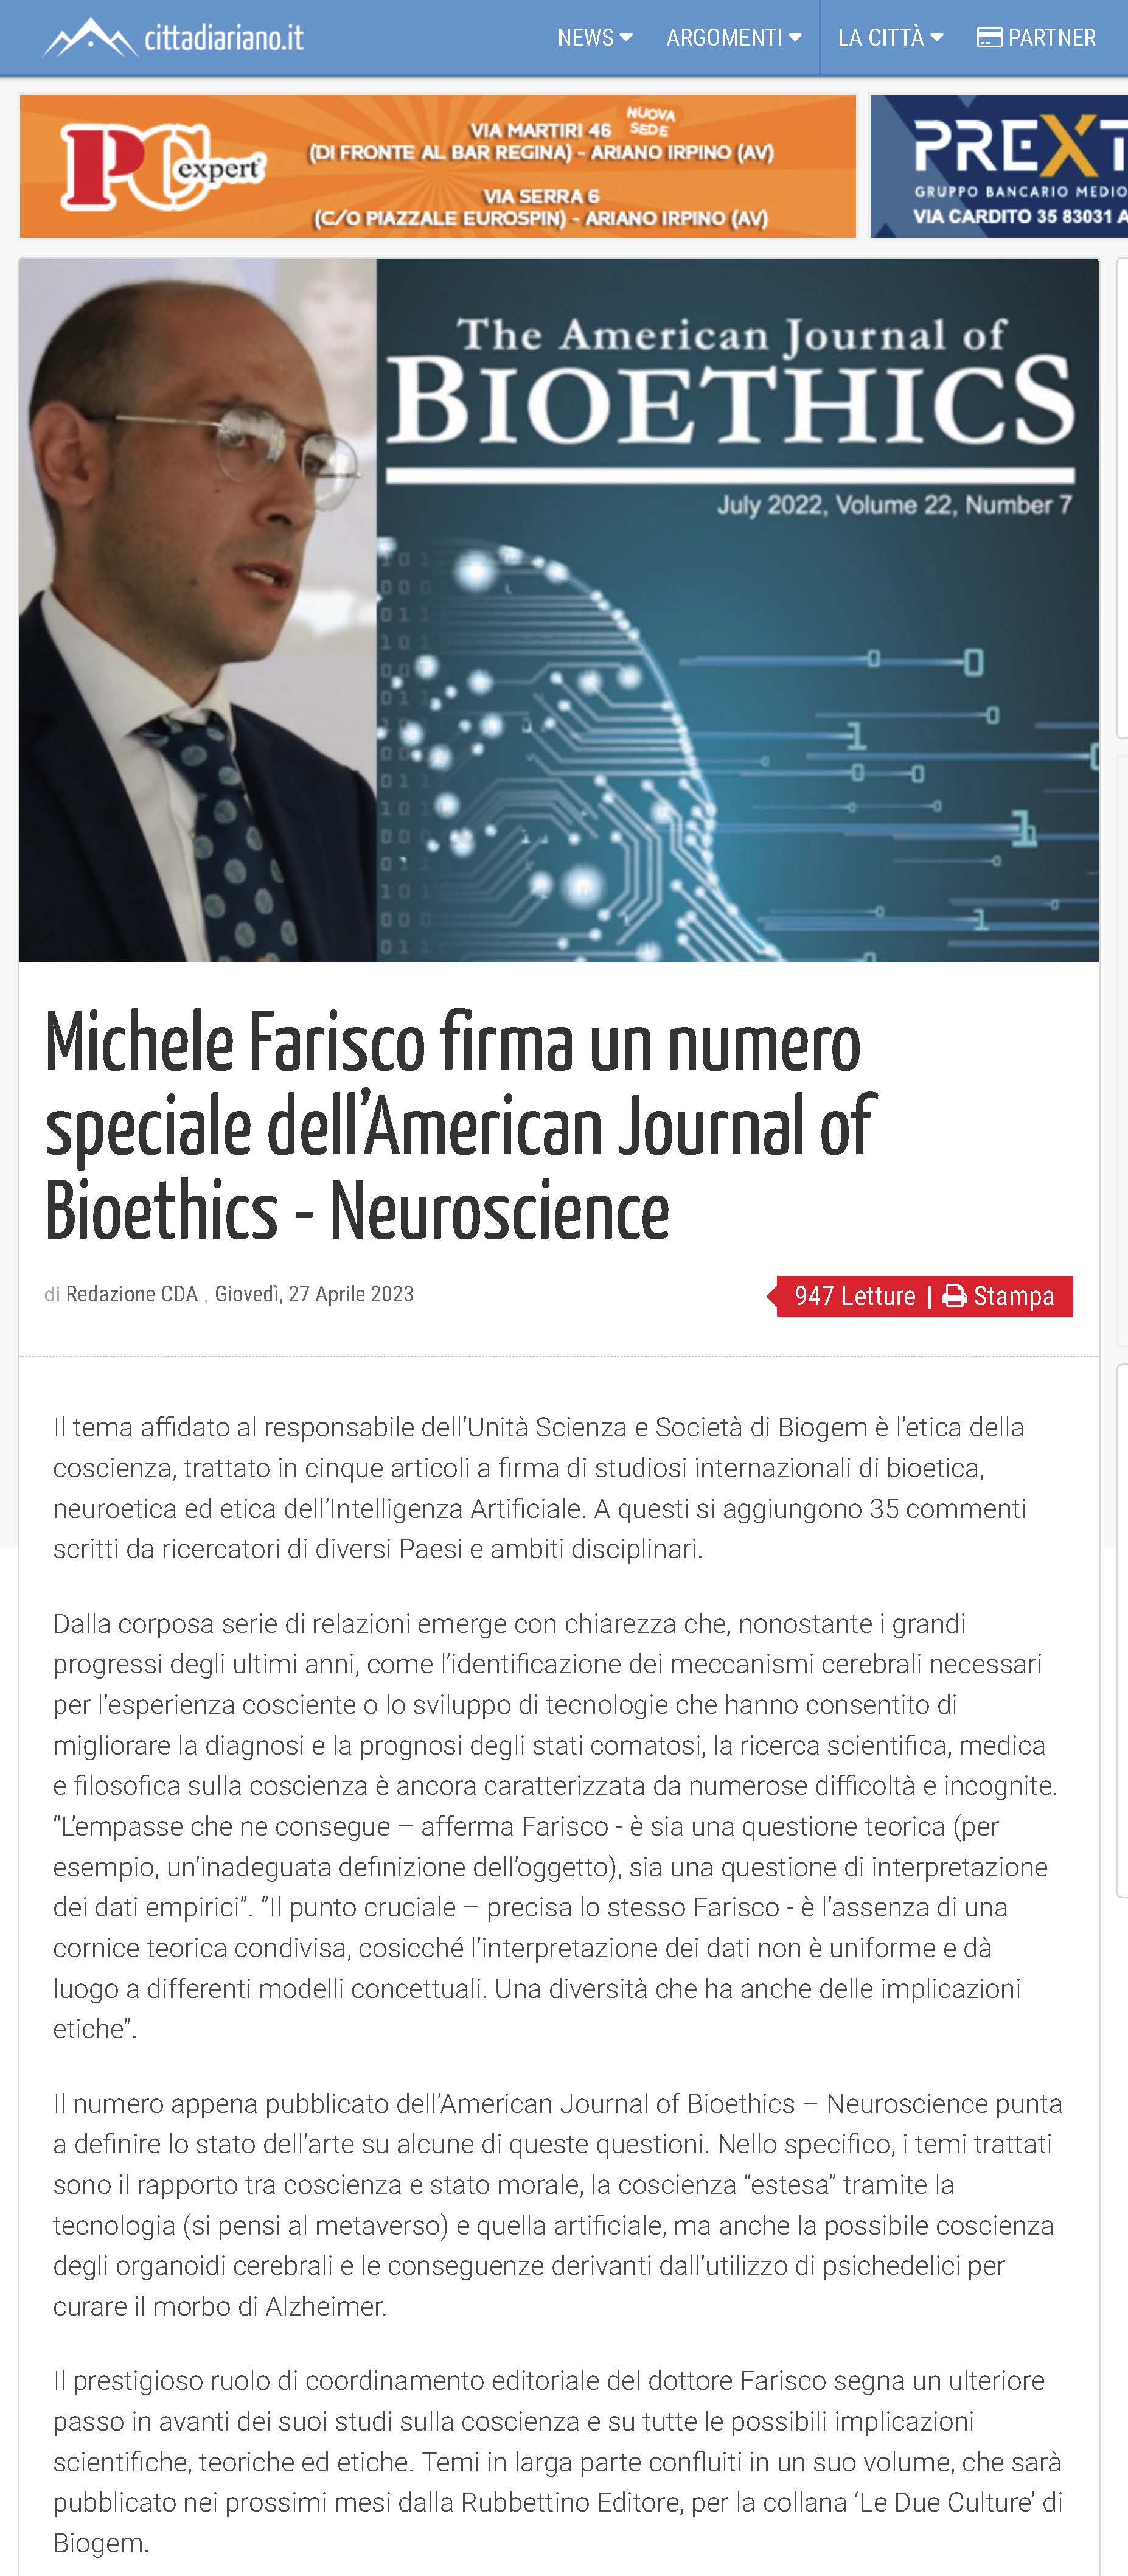 Michele Farisco firma un numero speciale dell’American Journal of Bioethics - Neuroscience